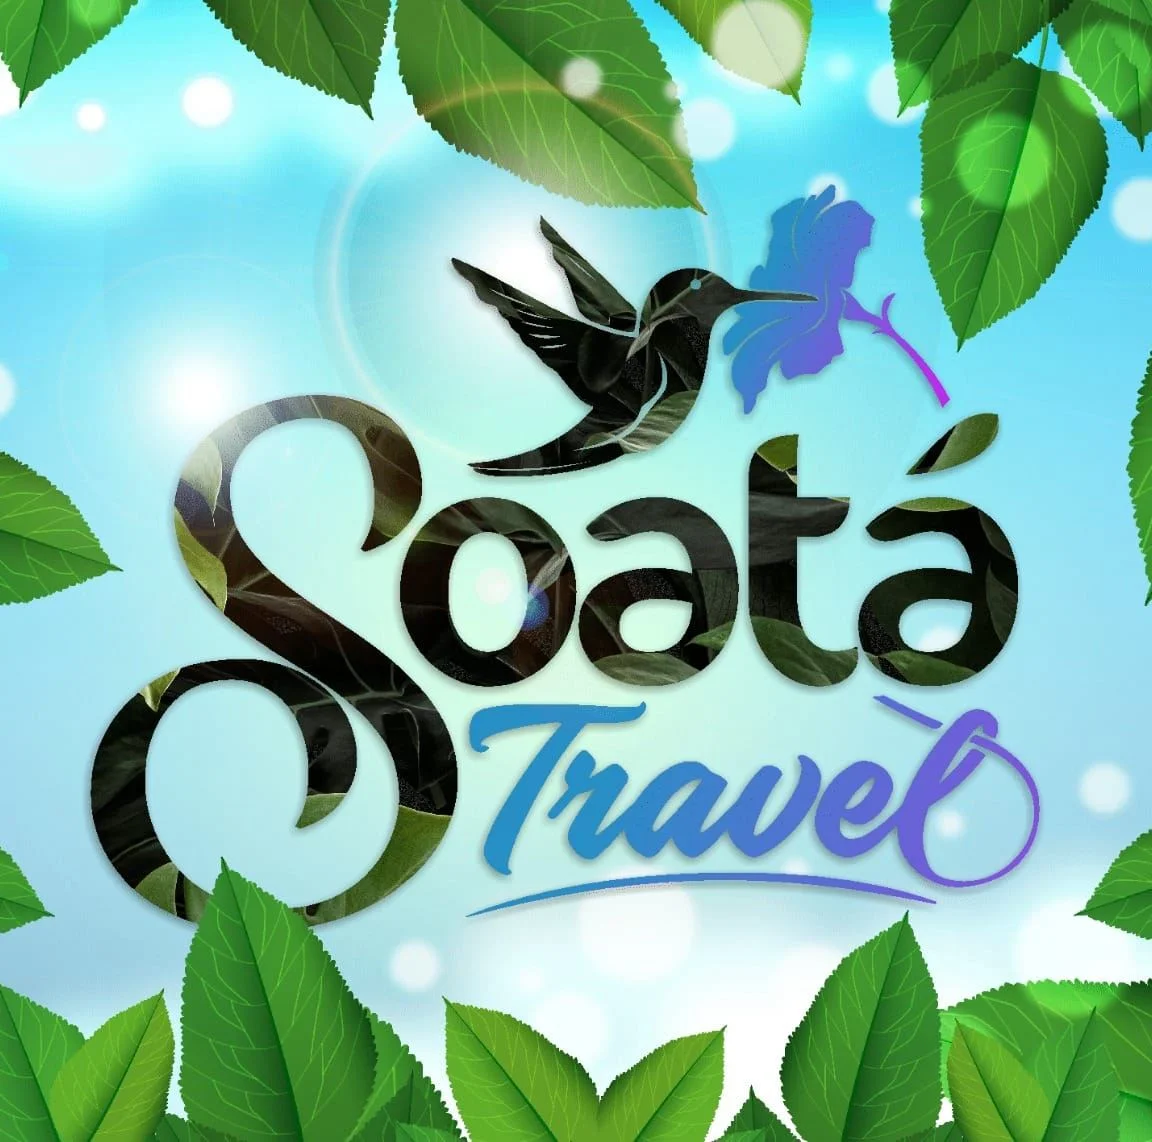 Logo Soata Travel